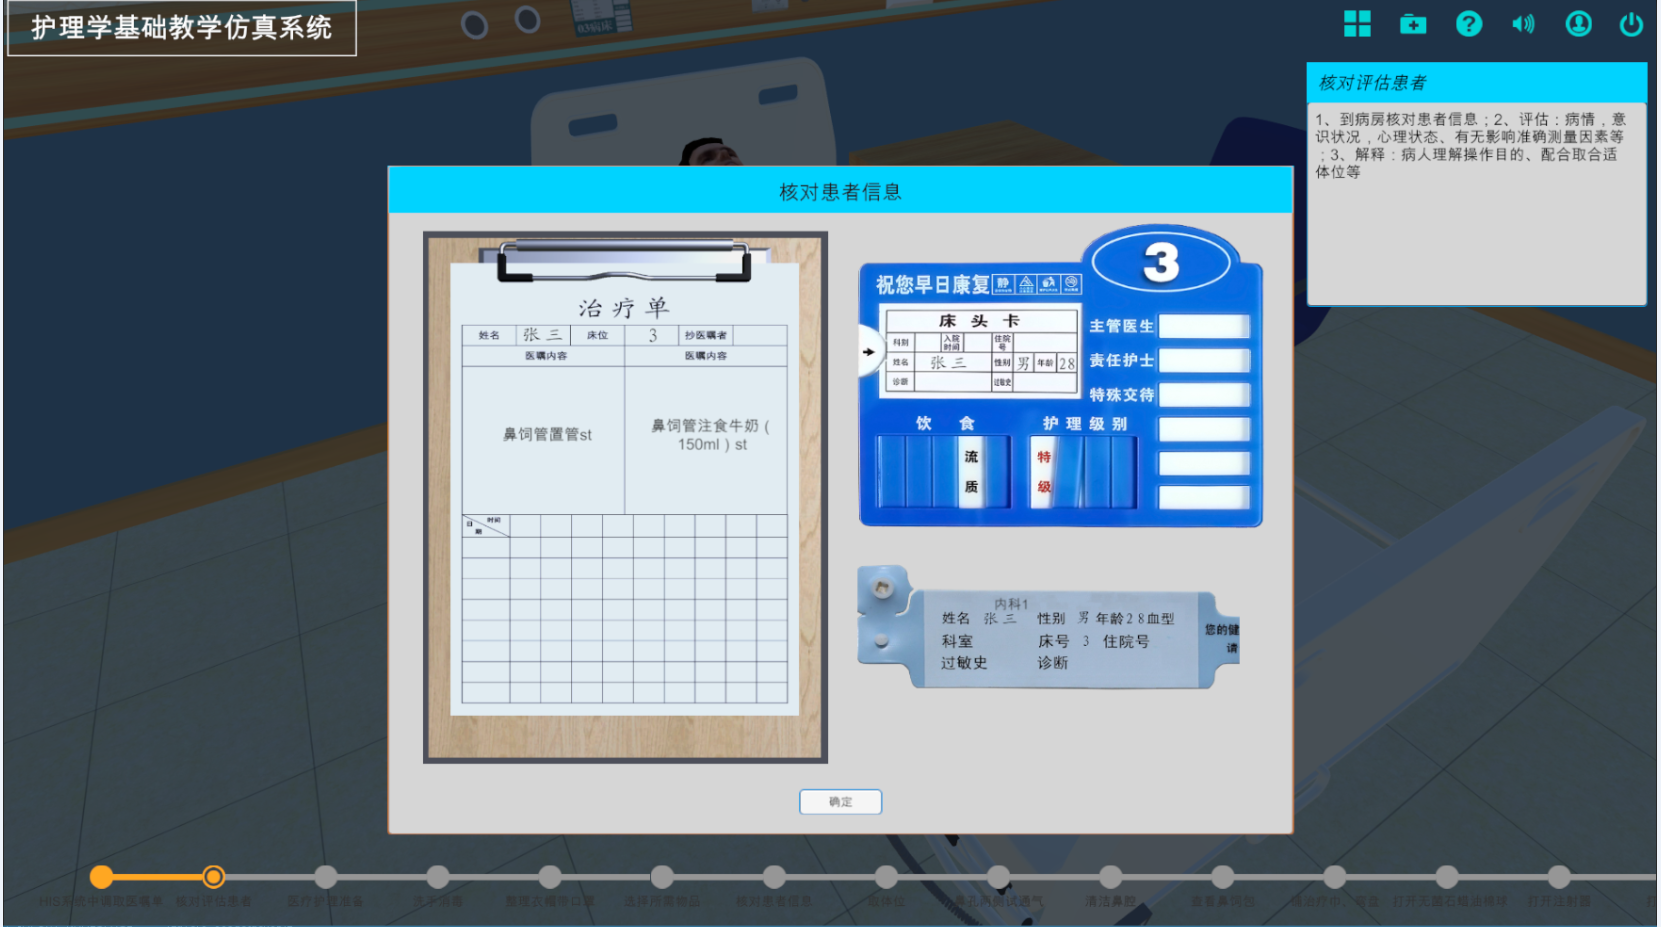 河南兰幻为现代护理学院提供虚拟仿真教学软件